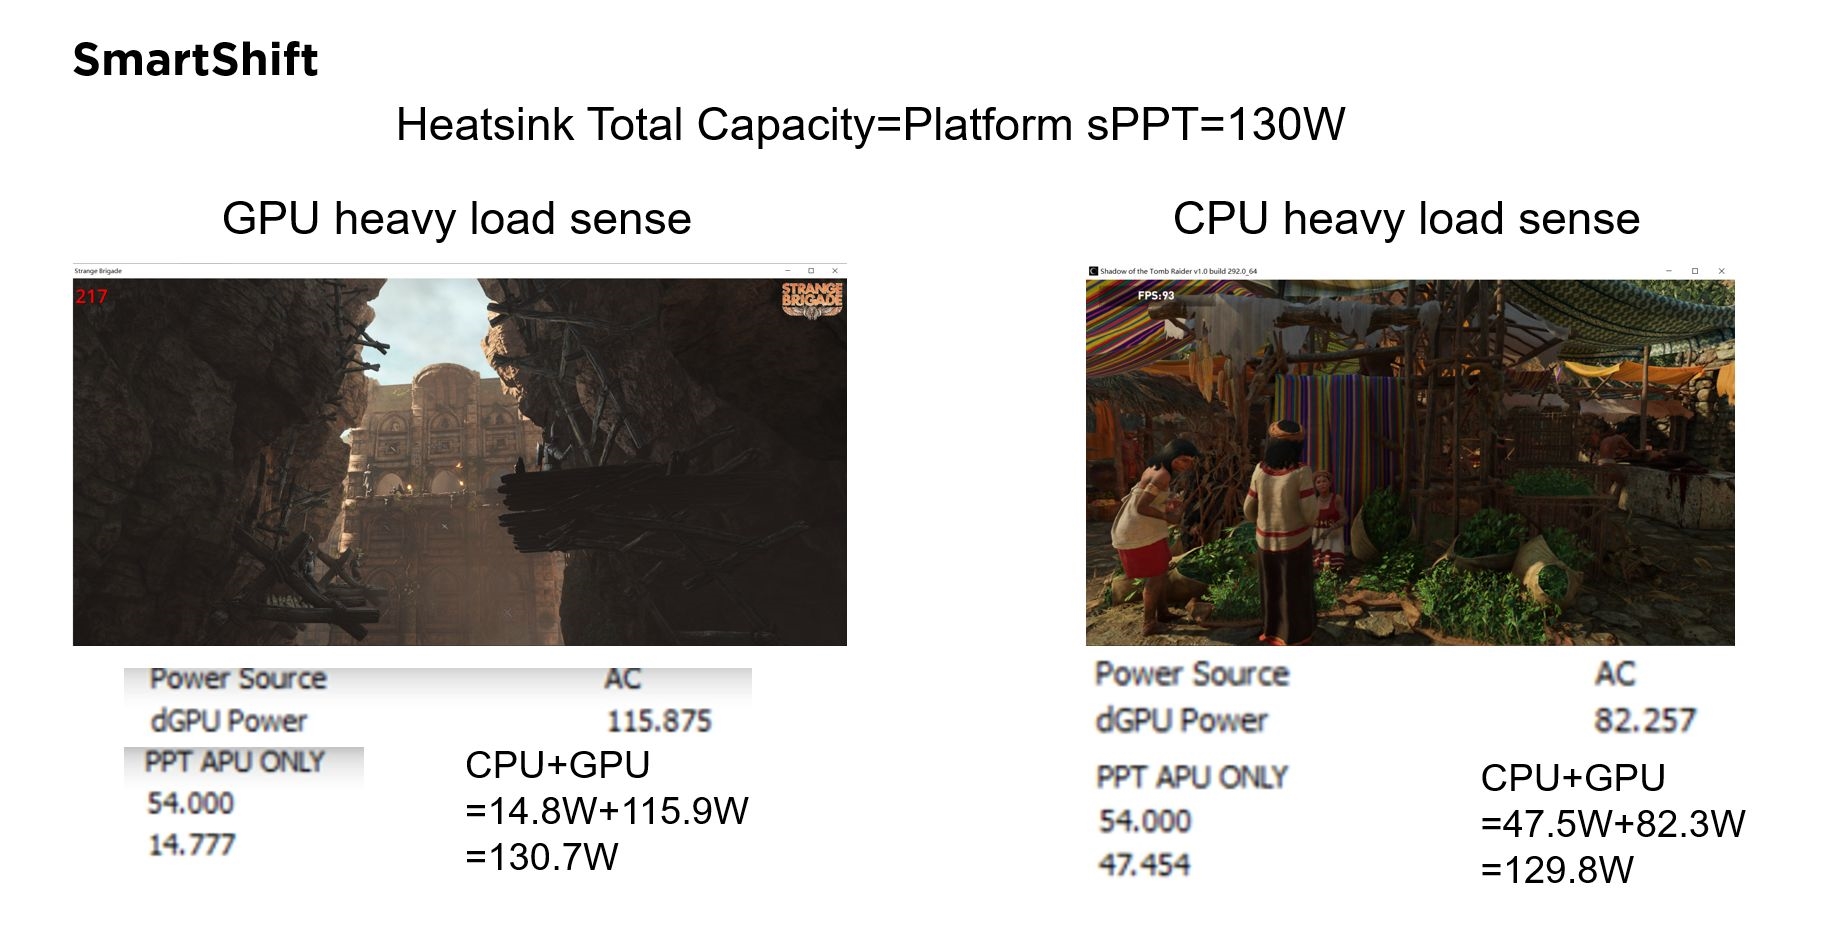 AMD RX 6000M笔记本显卡测试结果公布